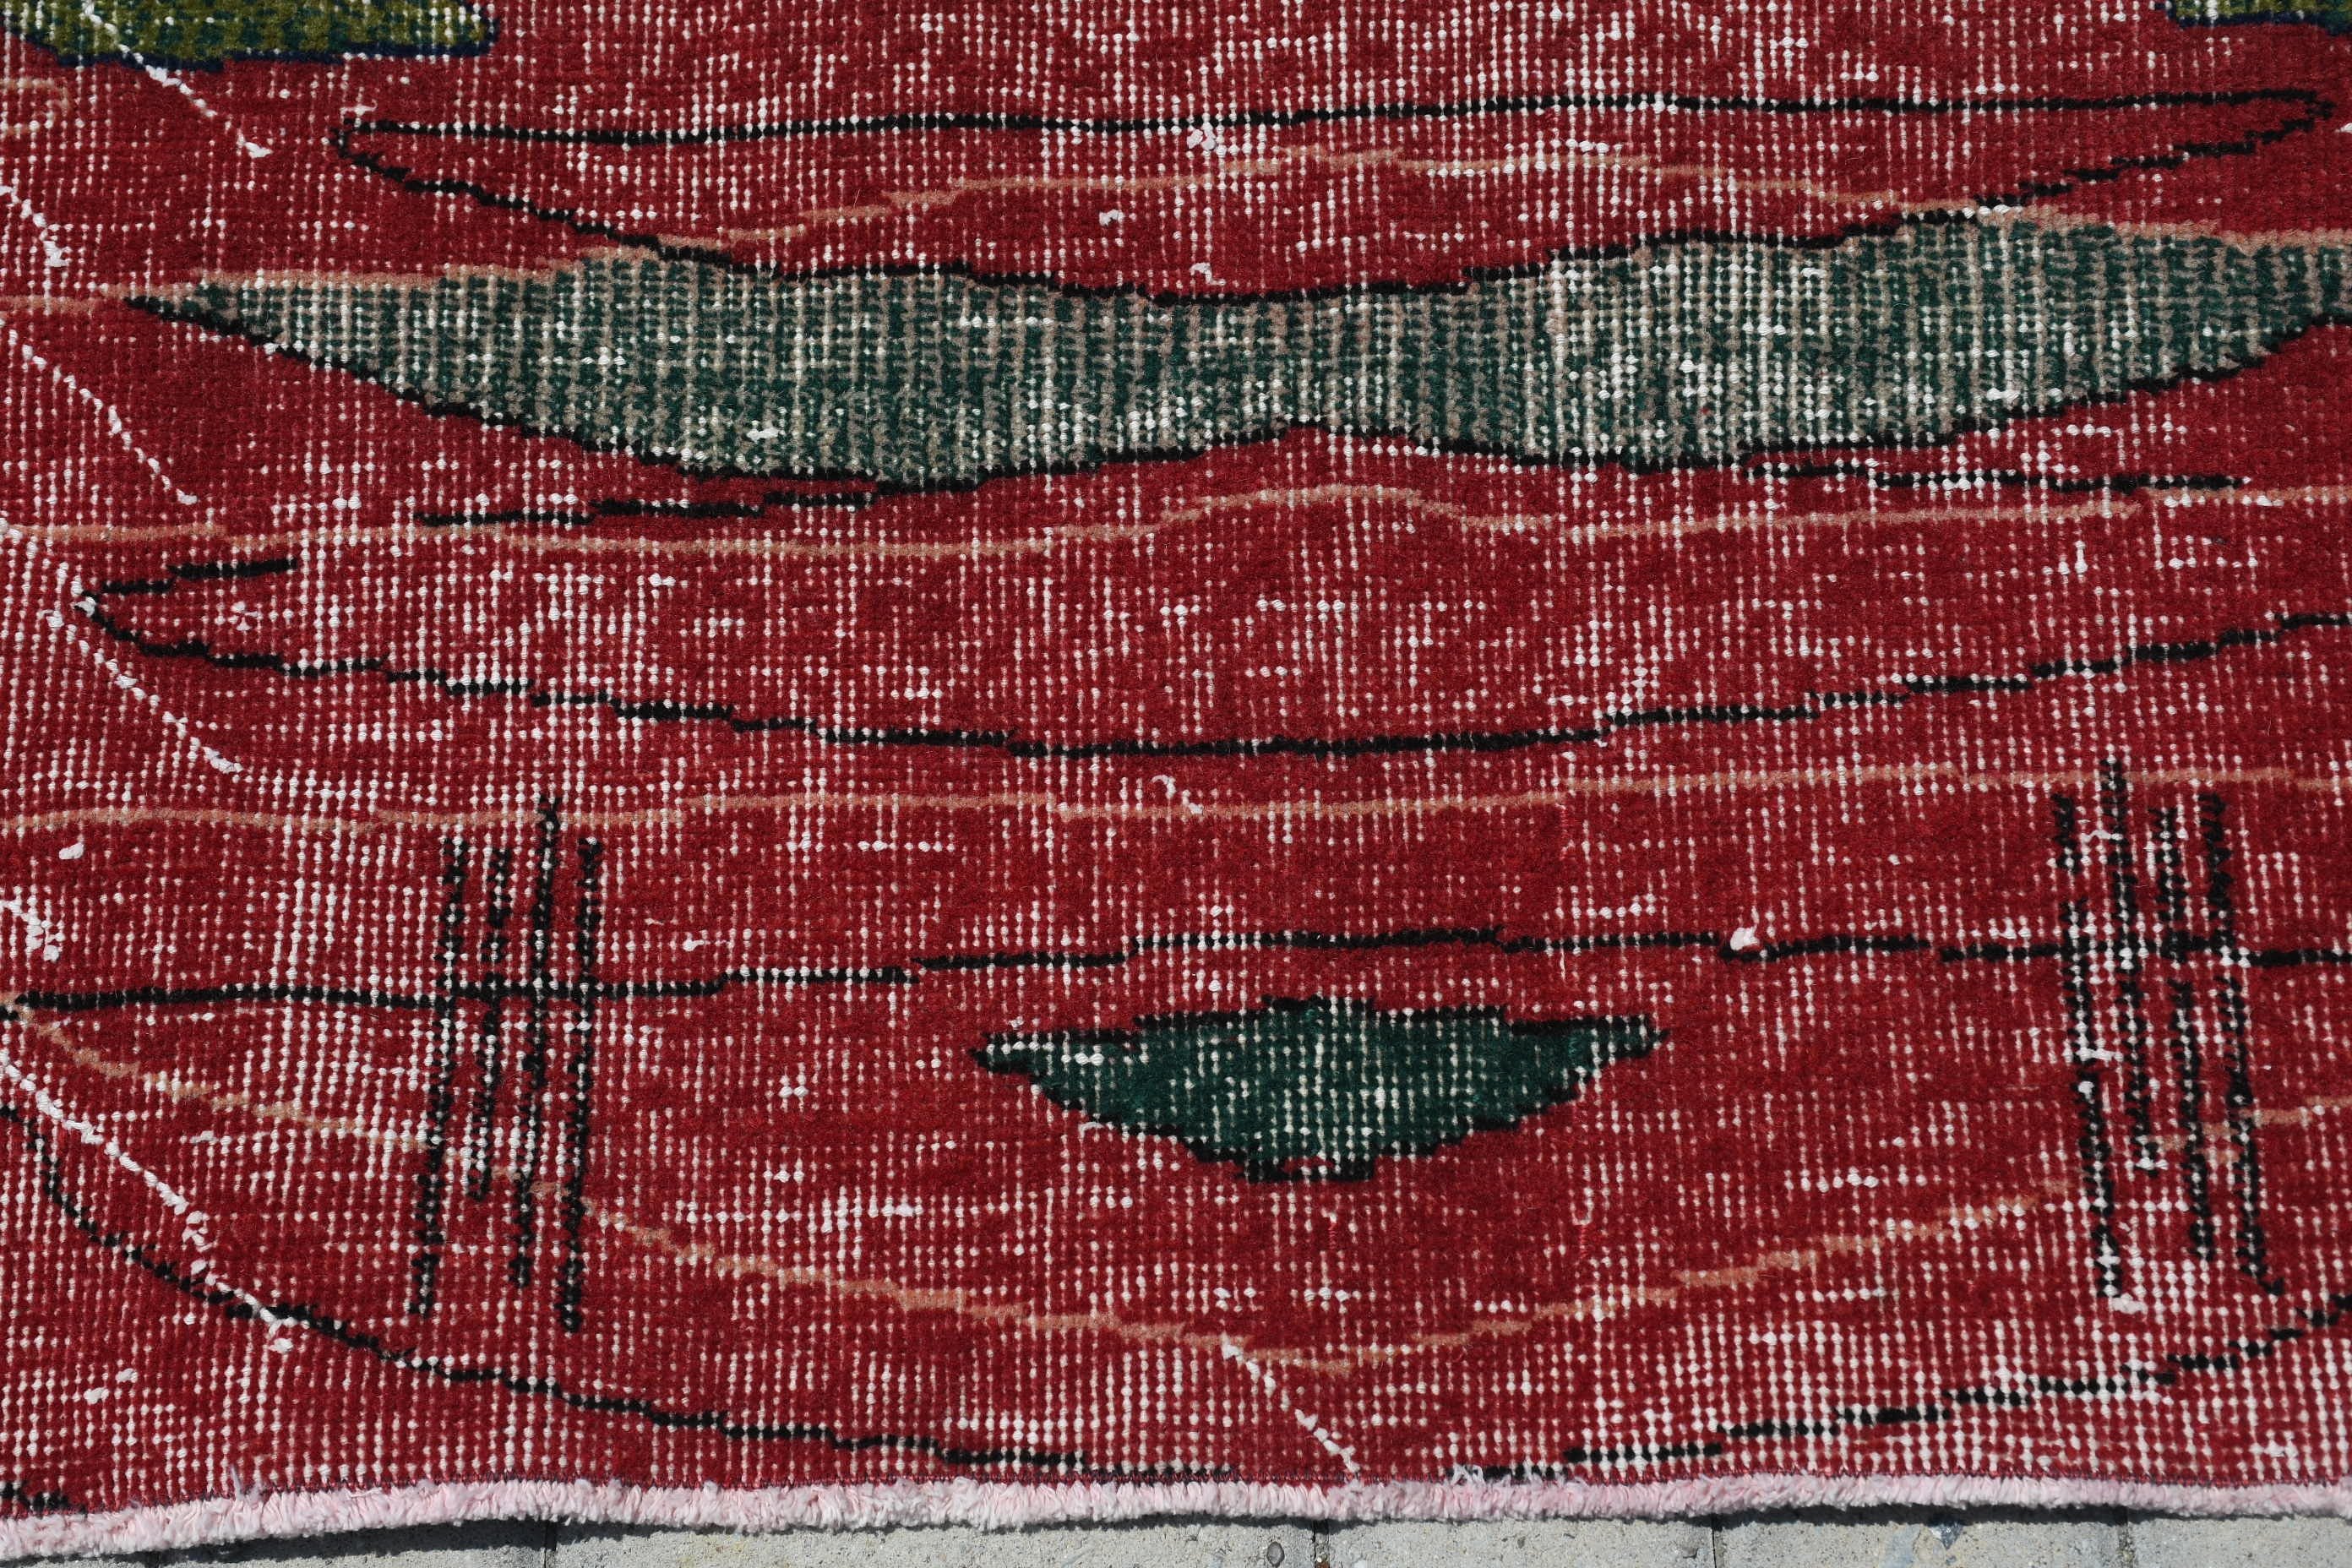 Turkish Rugs, Vintage Rugs, Dining Room Rug, Bedroom Rug, Outdoor Rug, 6.8x9.5 ft Large Rug, Green Wool Rug, Oriental Rug, Cool Rug